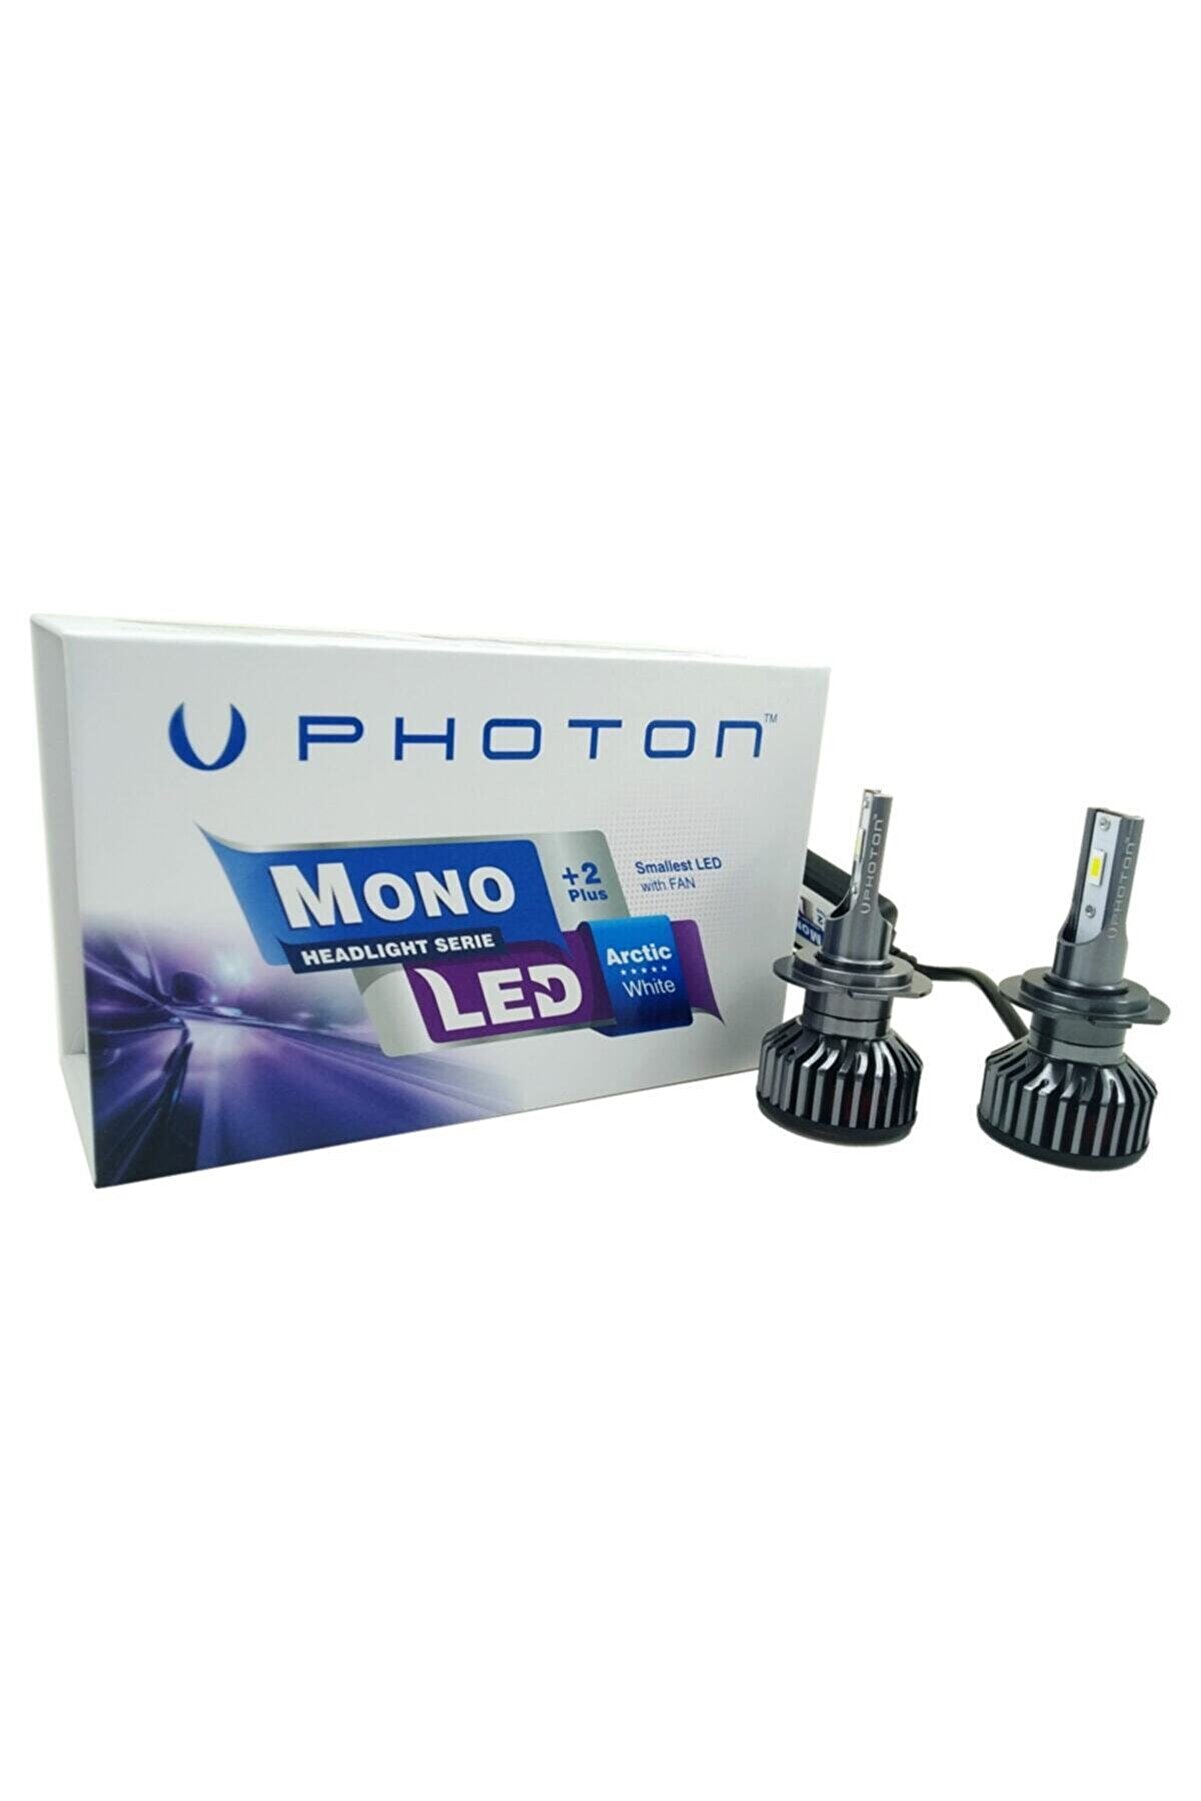 Photon Mono Serisi +2 Plus Led Xenon H7